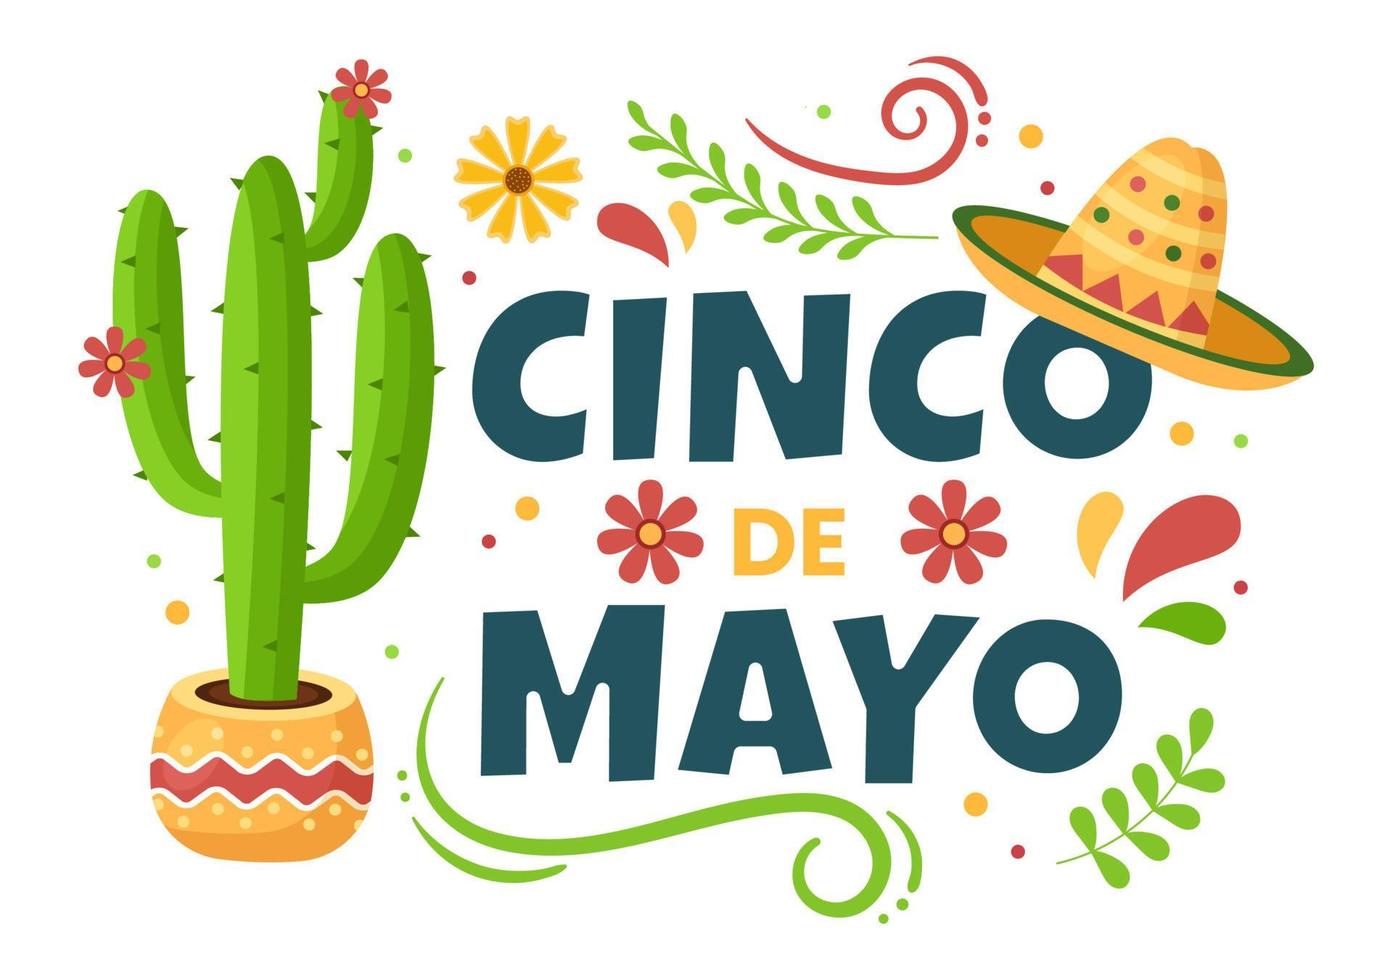 illustration de style dessin animé de célébration de vacances mexicaines cinco de mayo avec cactus, guitare, sombrero et tequila potable pour affiche ou carte de voeux vecteur